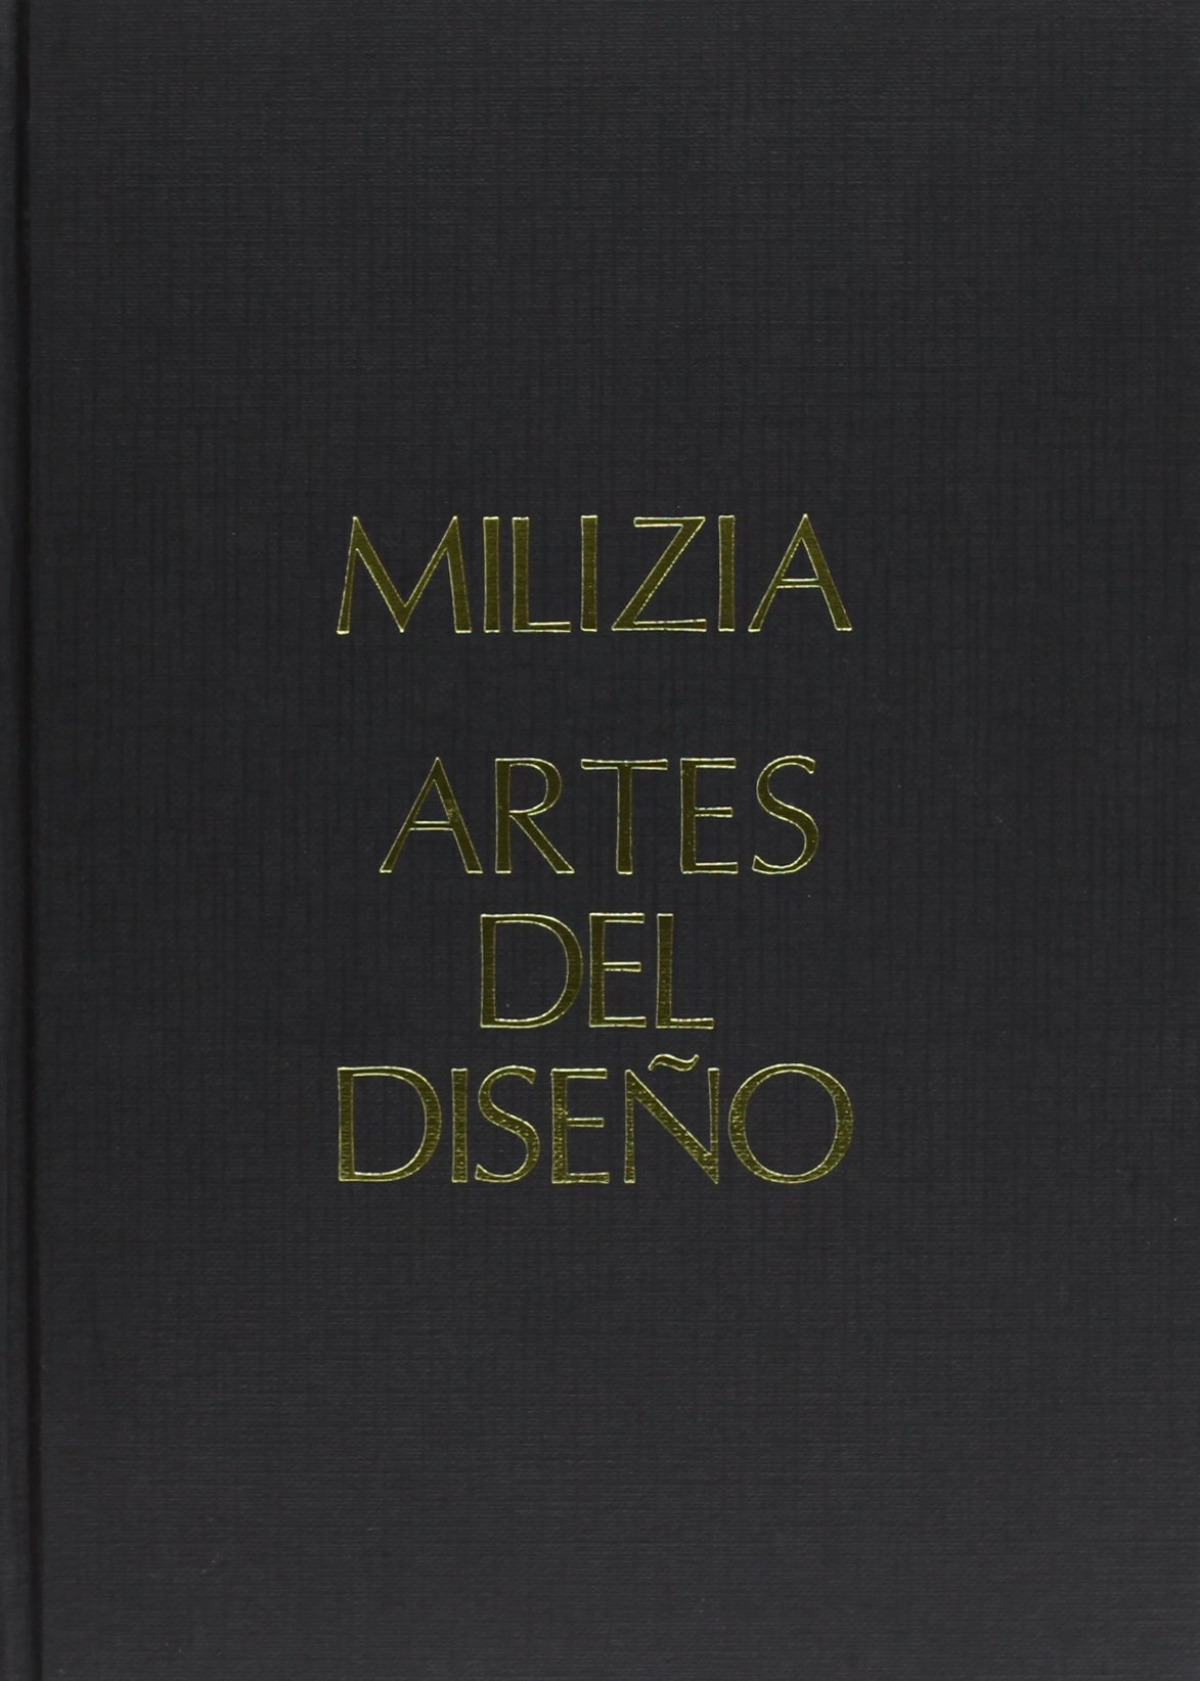 Arte de saber ver en las bellas artes del diseño - Milizia, Francisco de